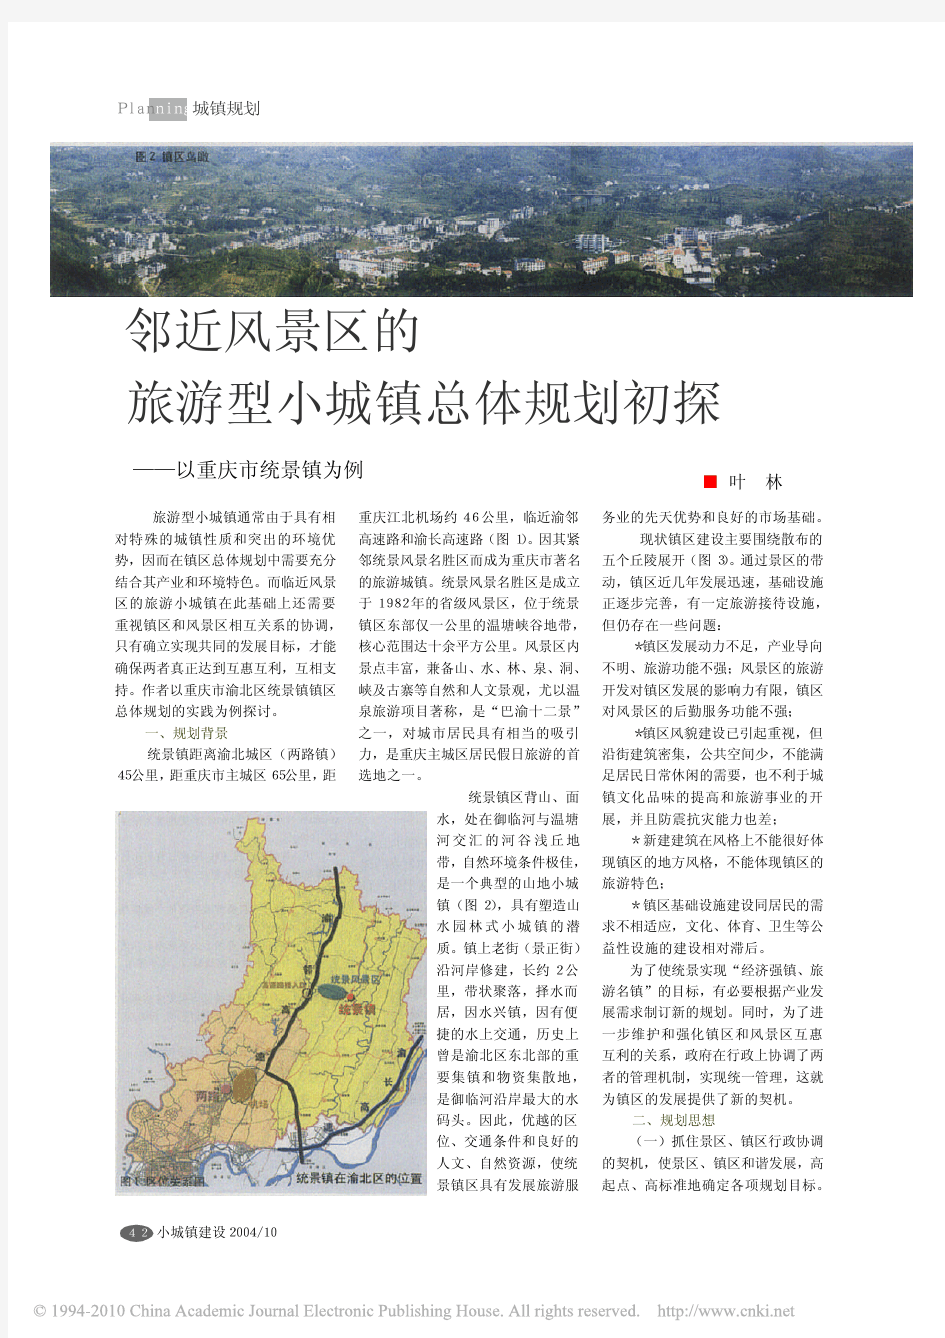 邻近风景区的旅游型小城镇总体规划初探_以重庆市统景镇为例